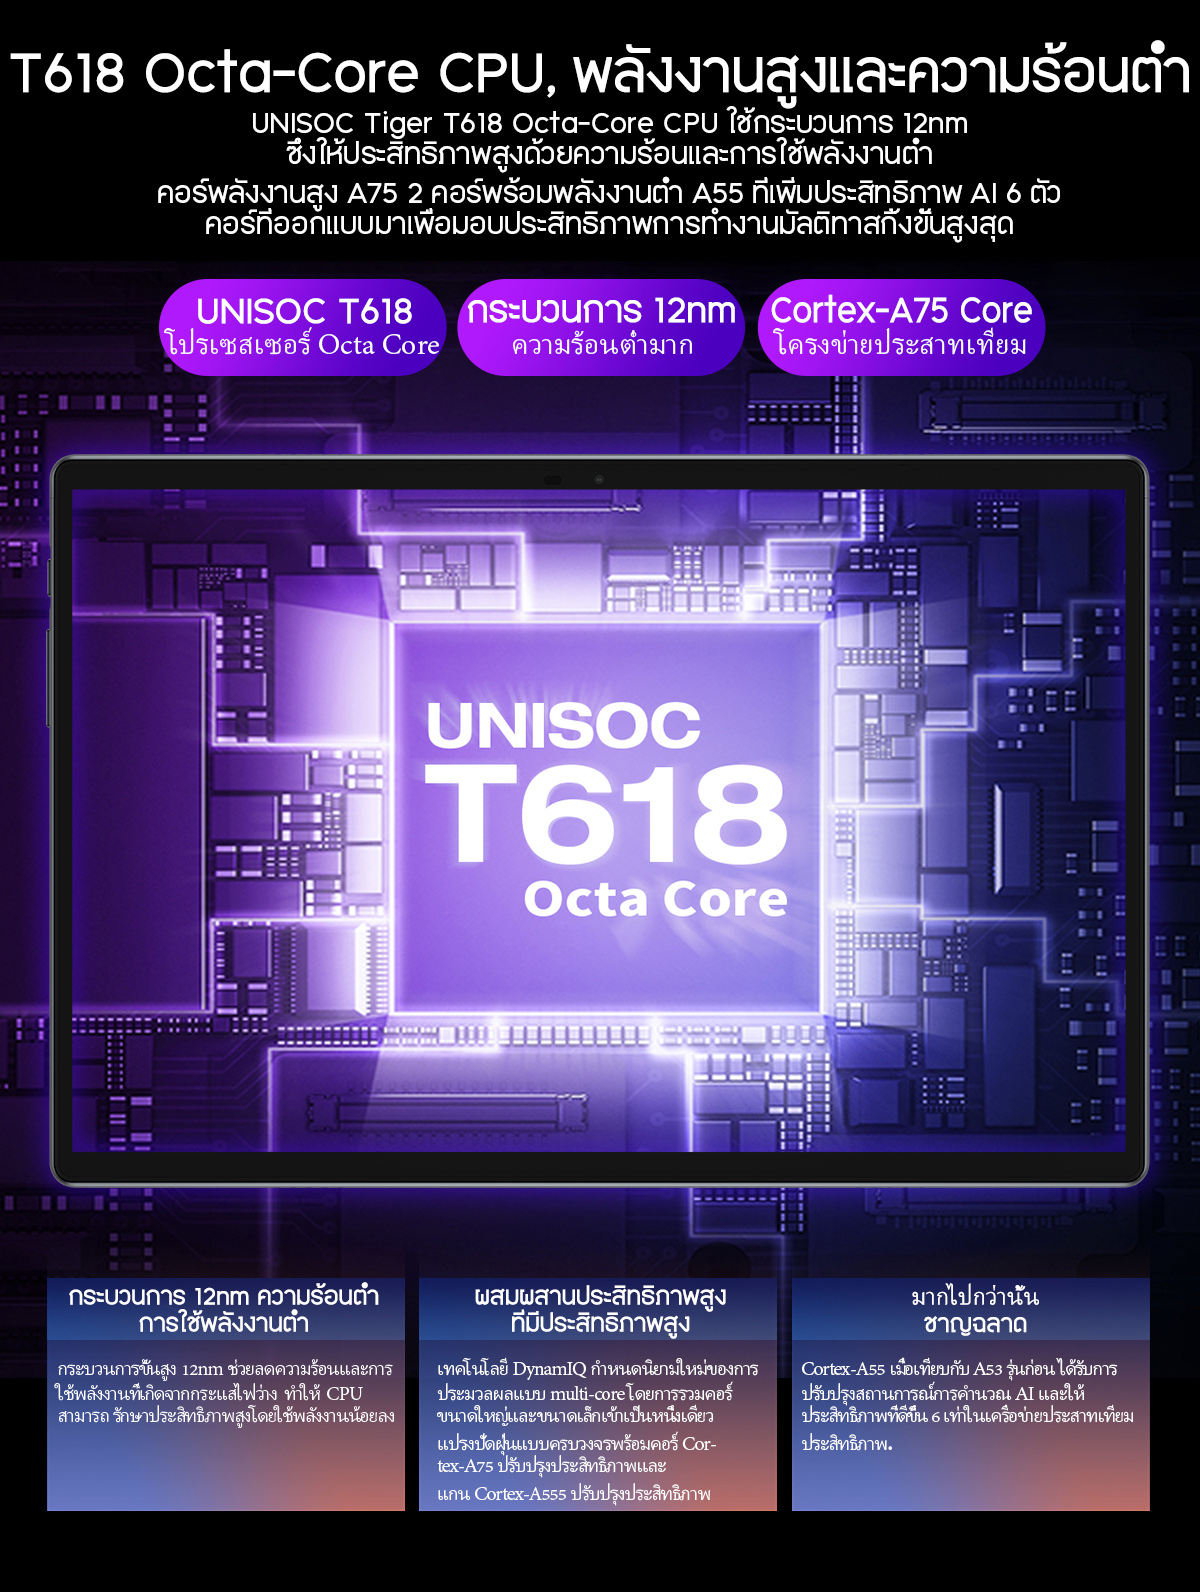 เกี่ยวกับสินค้า TECLAST M40Pro แท็บเล็ต 10.1 นิ้ว 1920*1200 หน้าจอ IPS Android11 CPU T618 octa-core 6GB/128GB แบตเตอรี่ขนาดใหญ่สุด 7000mAh ลำโพงสเตอริโอสี่ตัว เกม ความบันเทิง การเรียนรู้